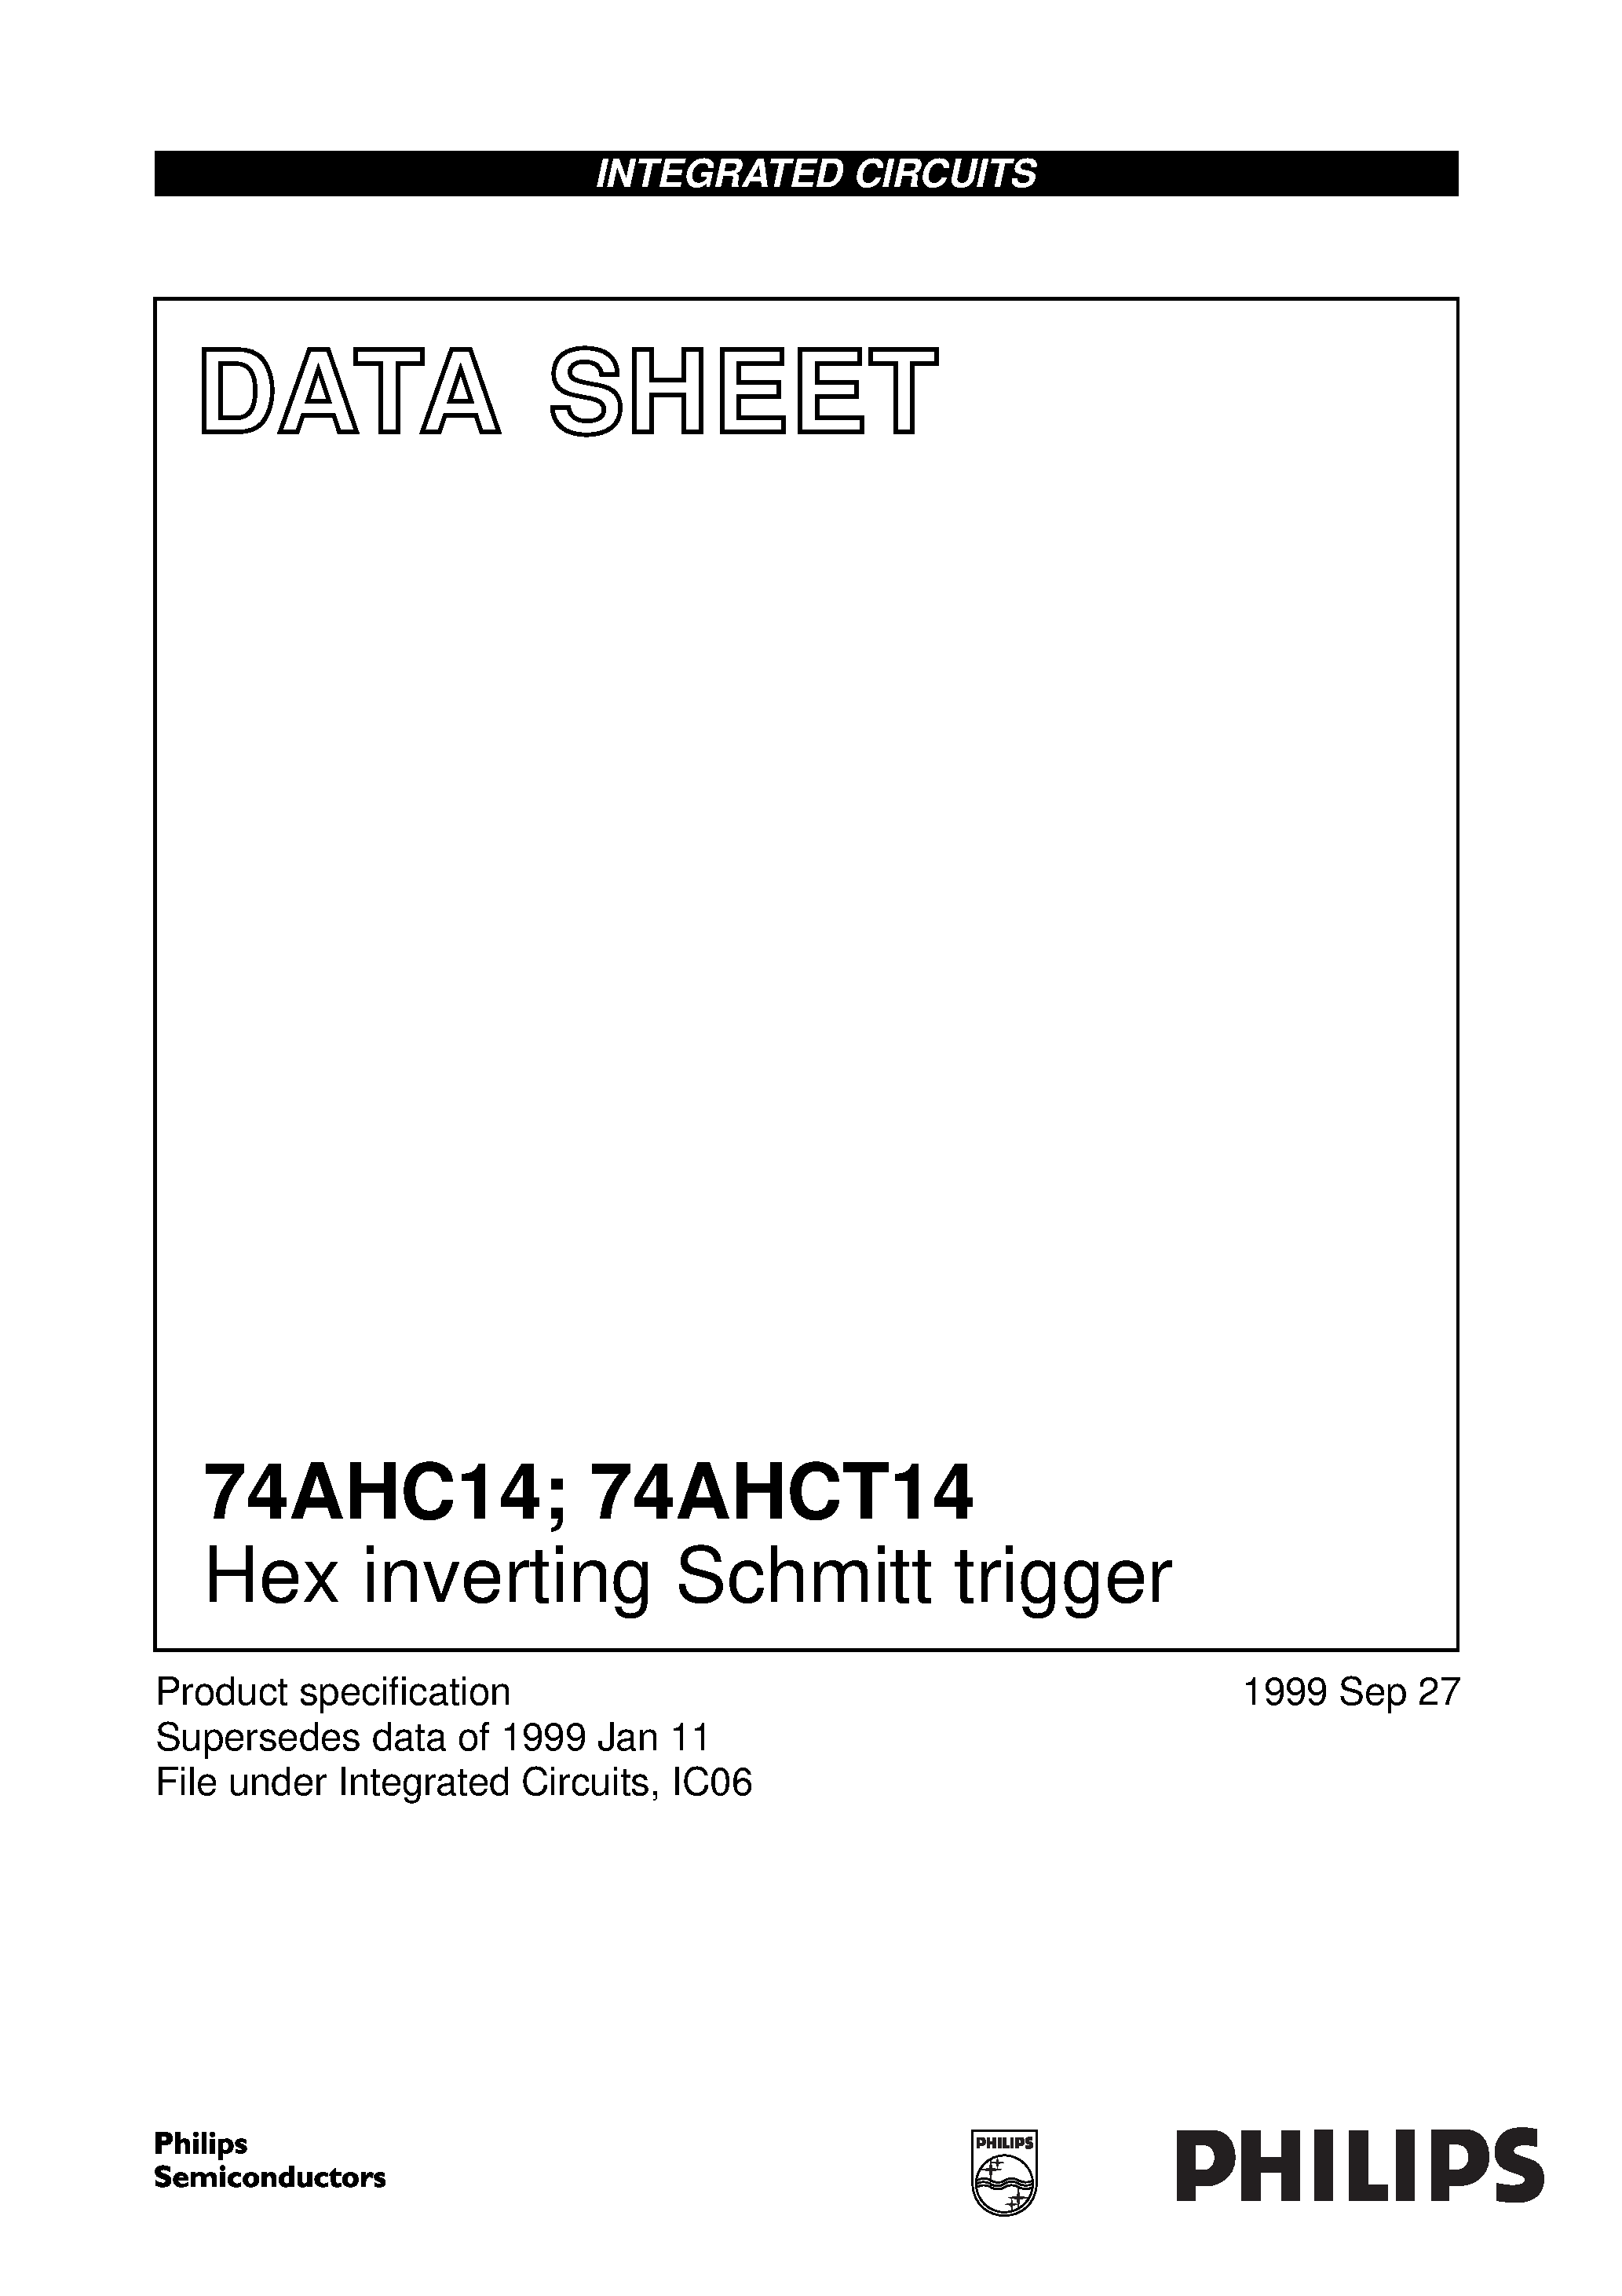 Datasheet 74AHC14 - Hex inverting Schmitt trigger page 1